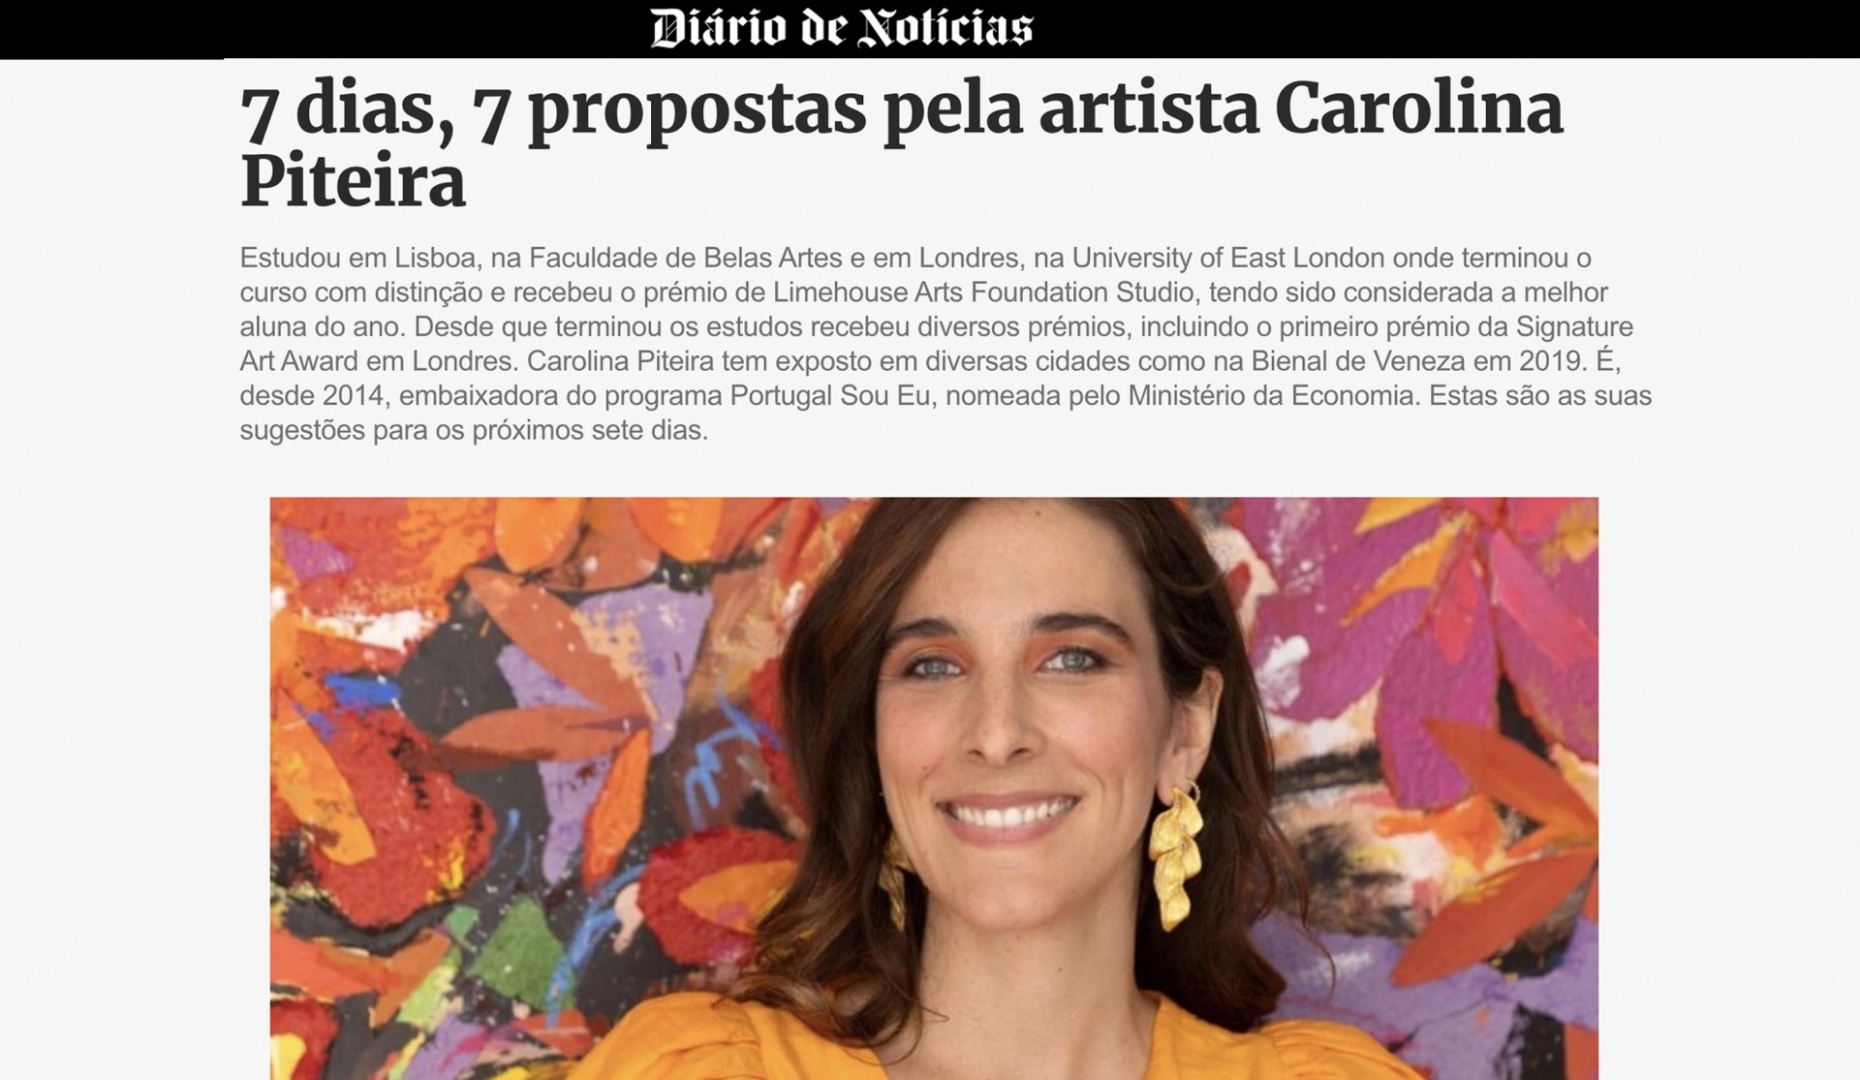 Carolina Piteira Press Diário de Notícias - 7 dias, 7 propostas pela artista Carolina Piteira (1)